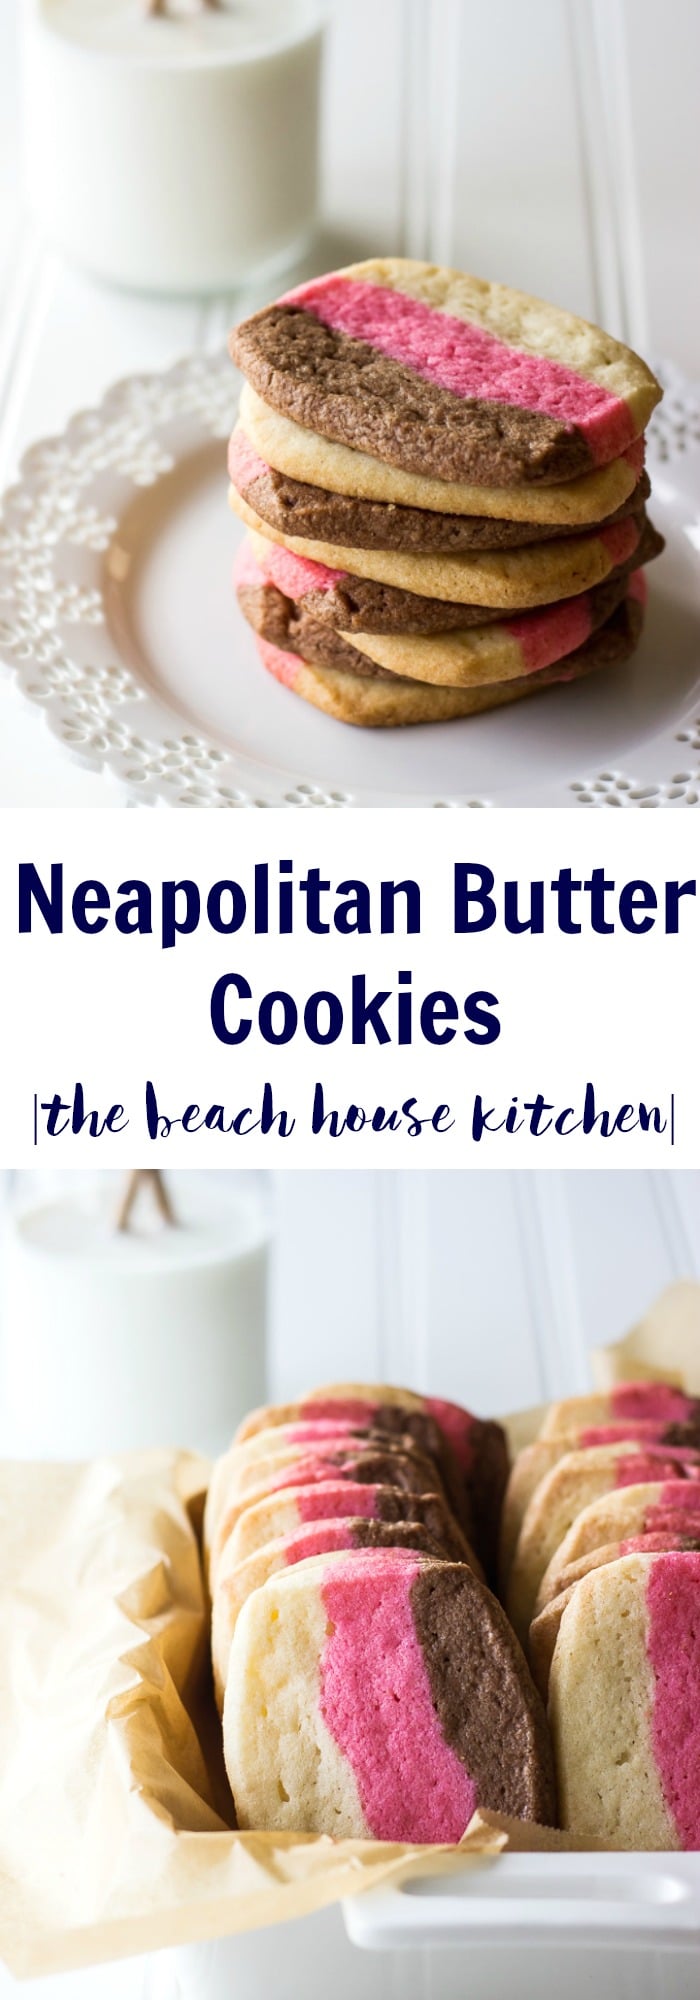 Neapolitan Butter Cookies